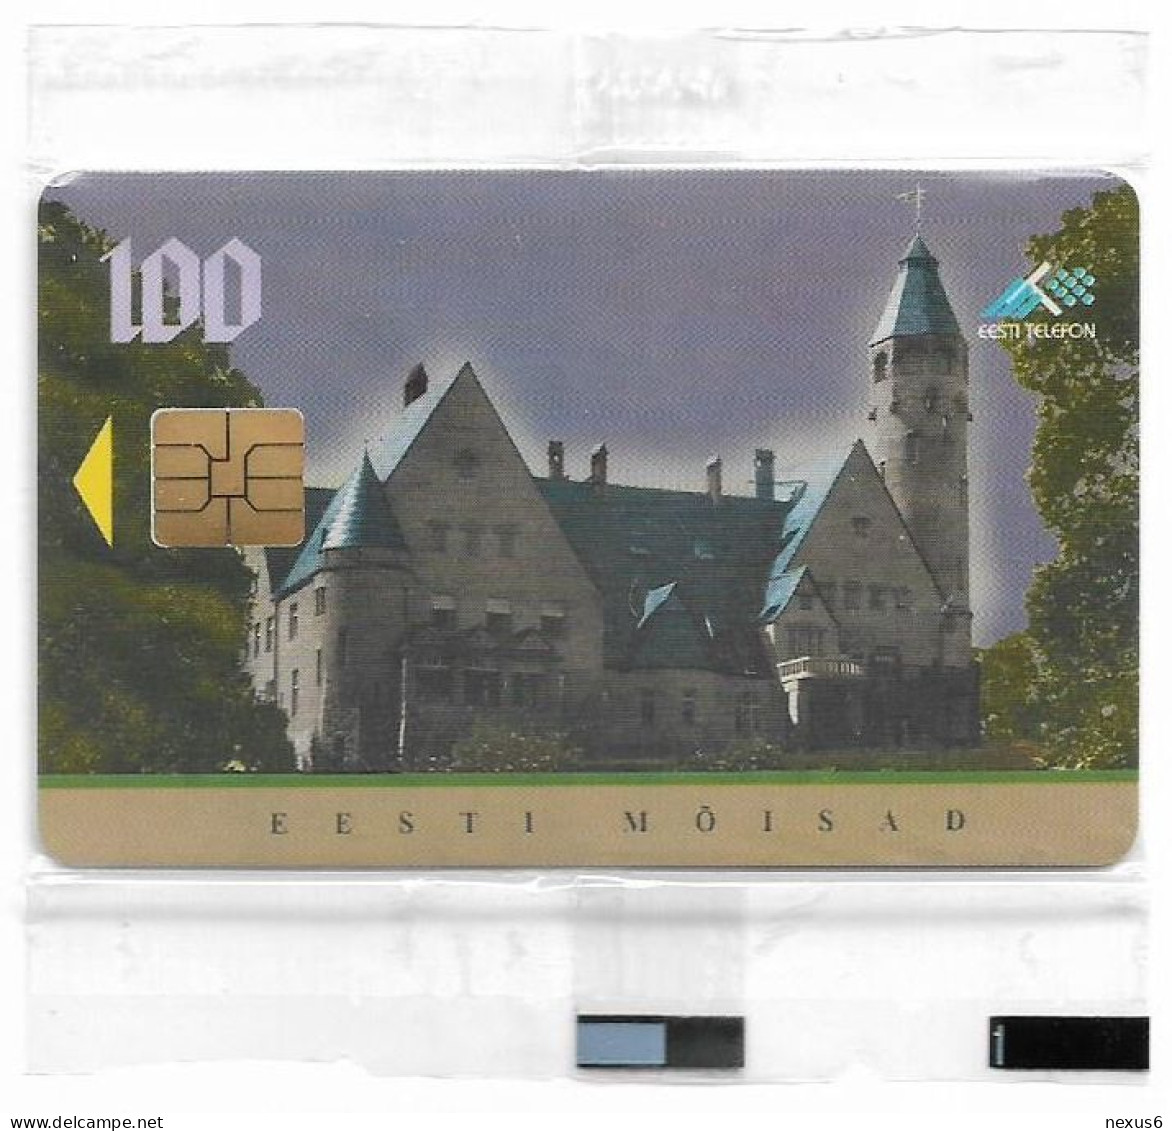 Estonia - Eesti Telefon - Taagepera Manor - ET0095 - 10.1998, 100Kr, 10.000ex, NSB - Estland